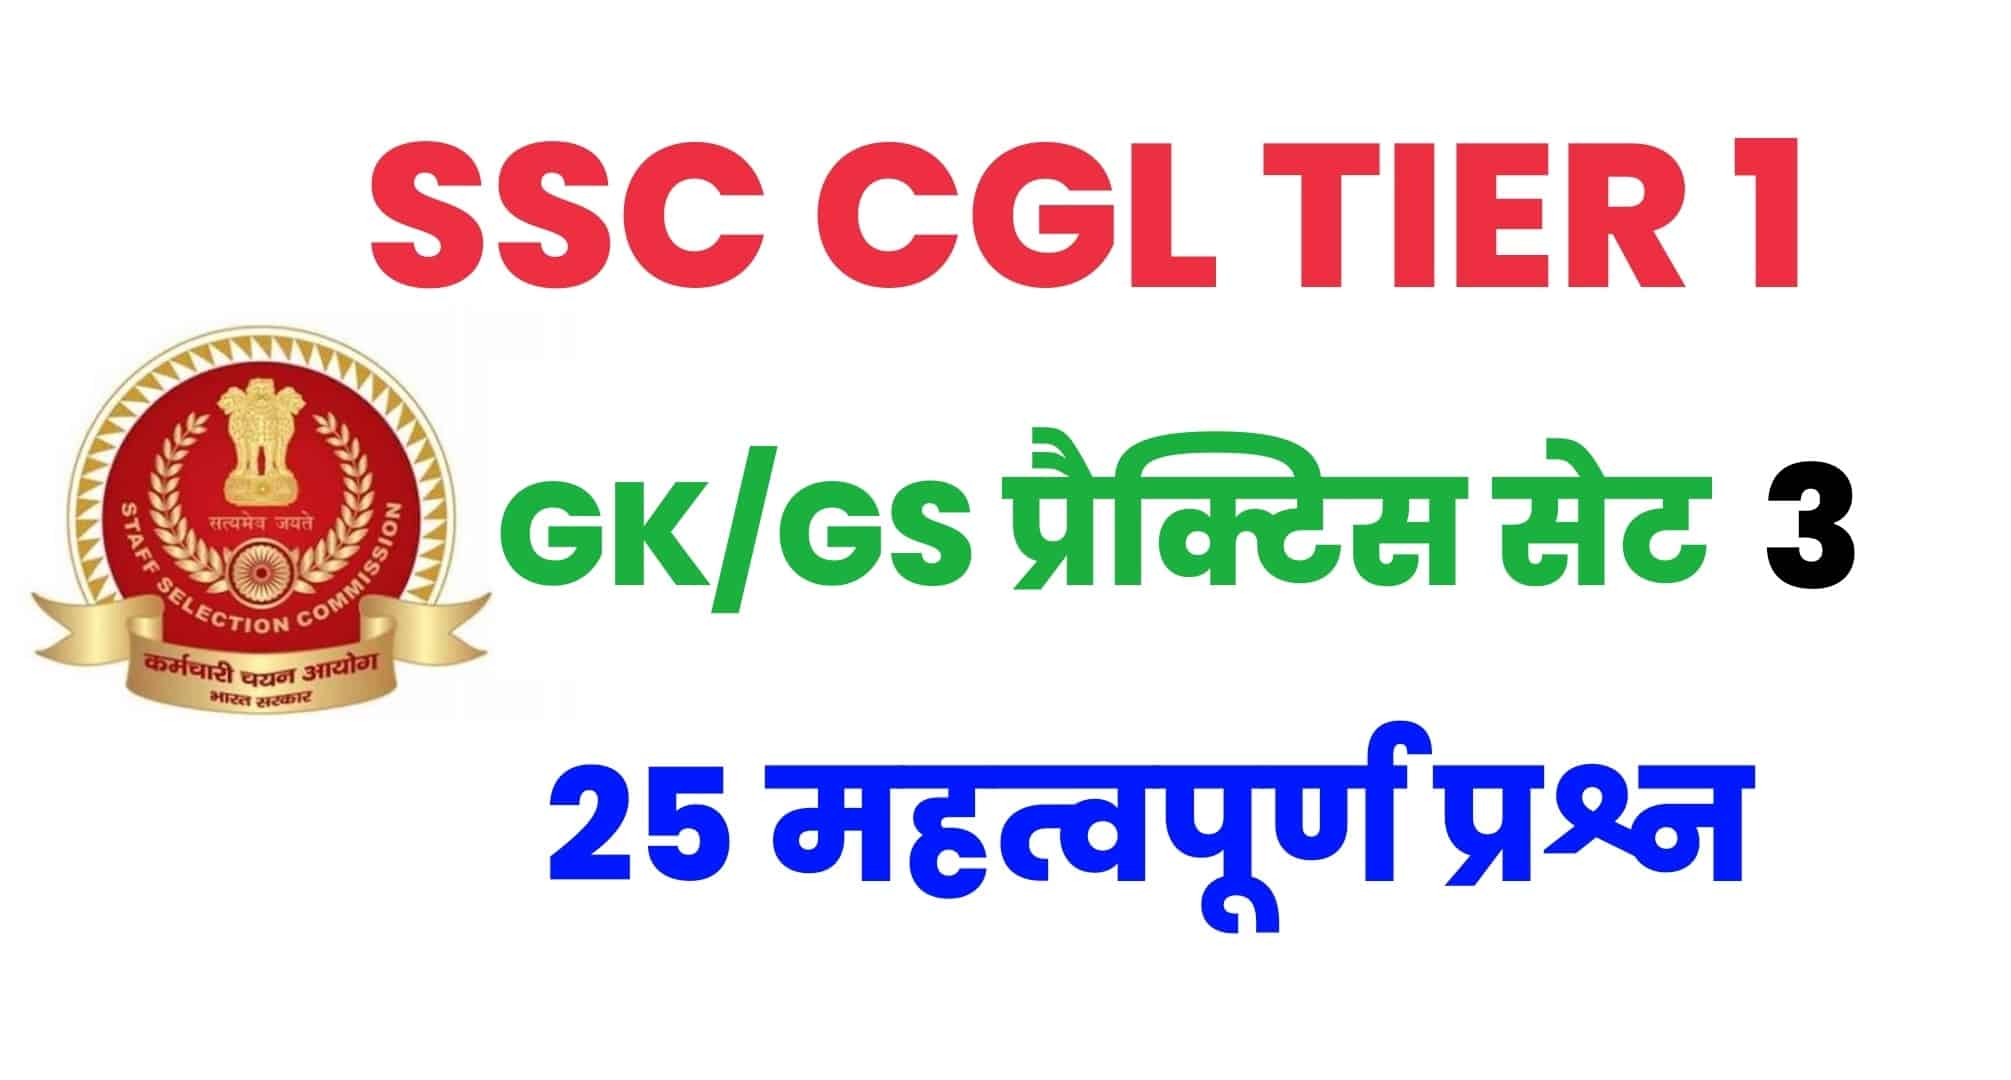 SSC CGL GK/GS प्रैक्टिस सेट 3 : परीक्षा से पहले कर लें इन महत्वपूर्ण 25 प्रश्नों का अध्ययन